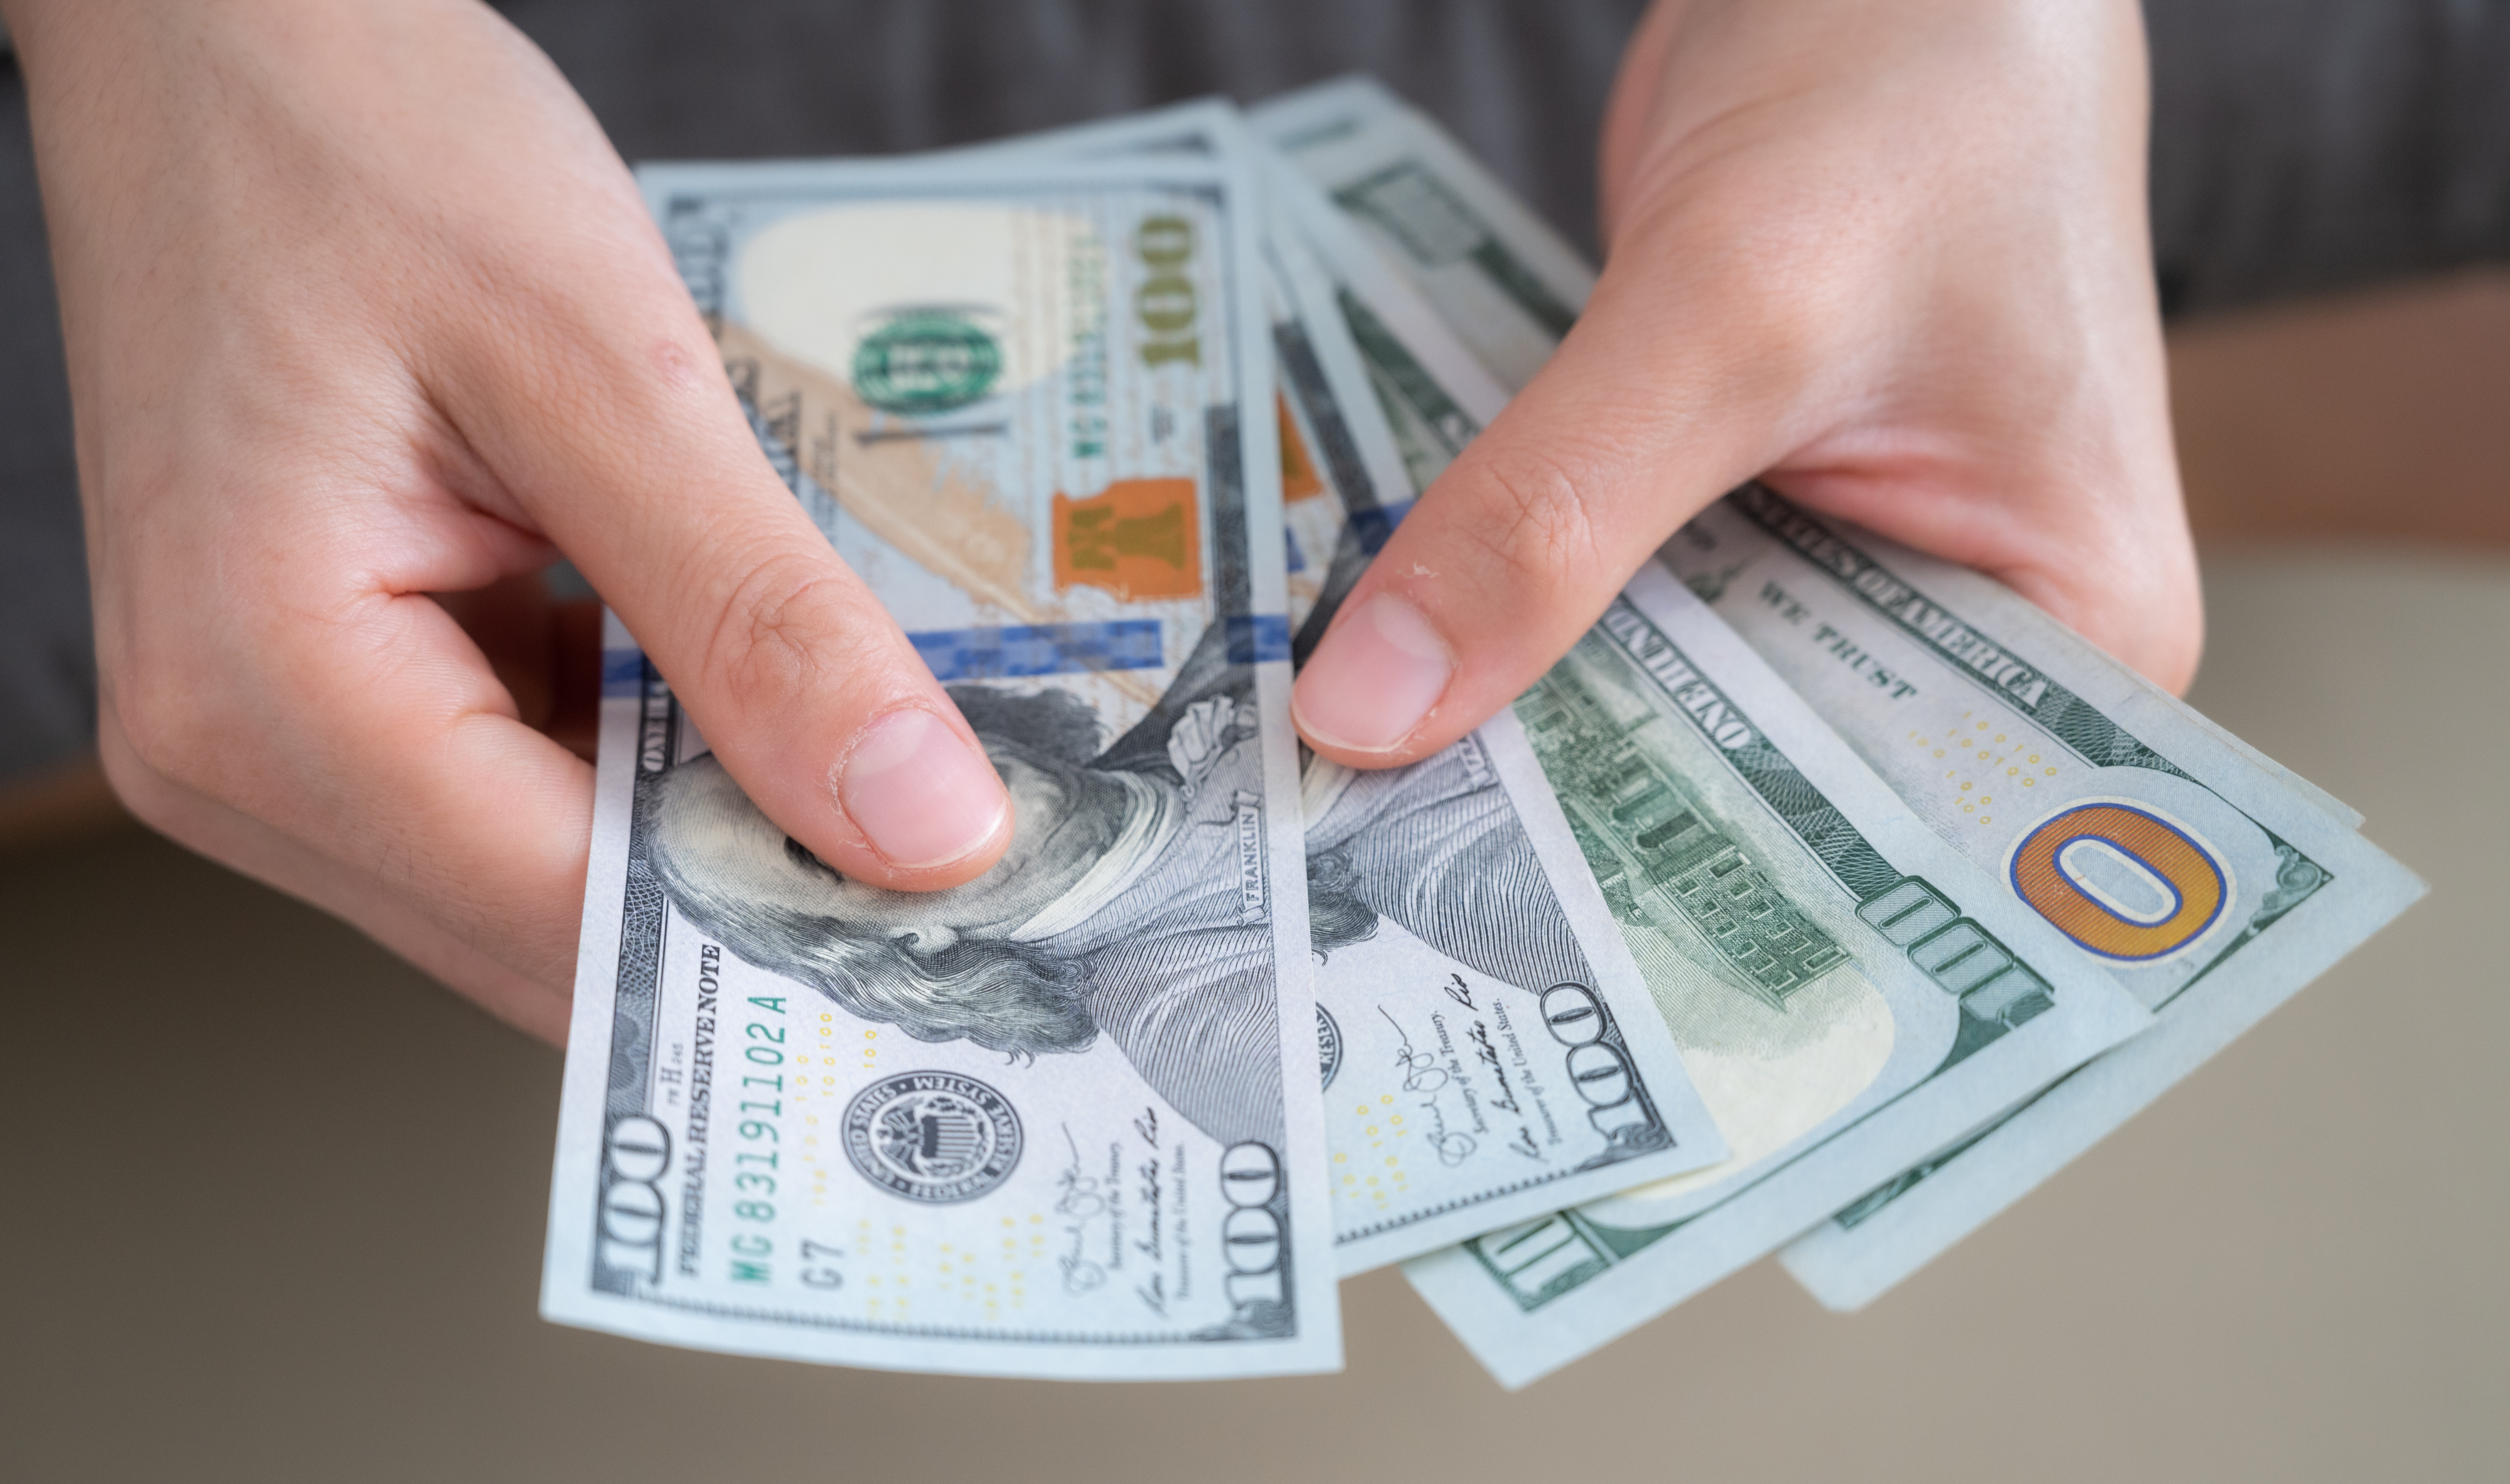 Hände, die amerikanische Dollar zählen | Quelle: Getty Images